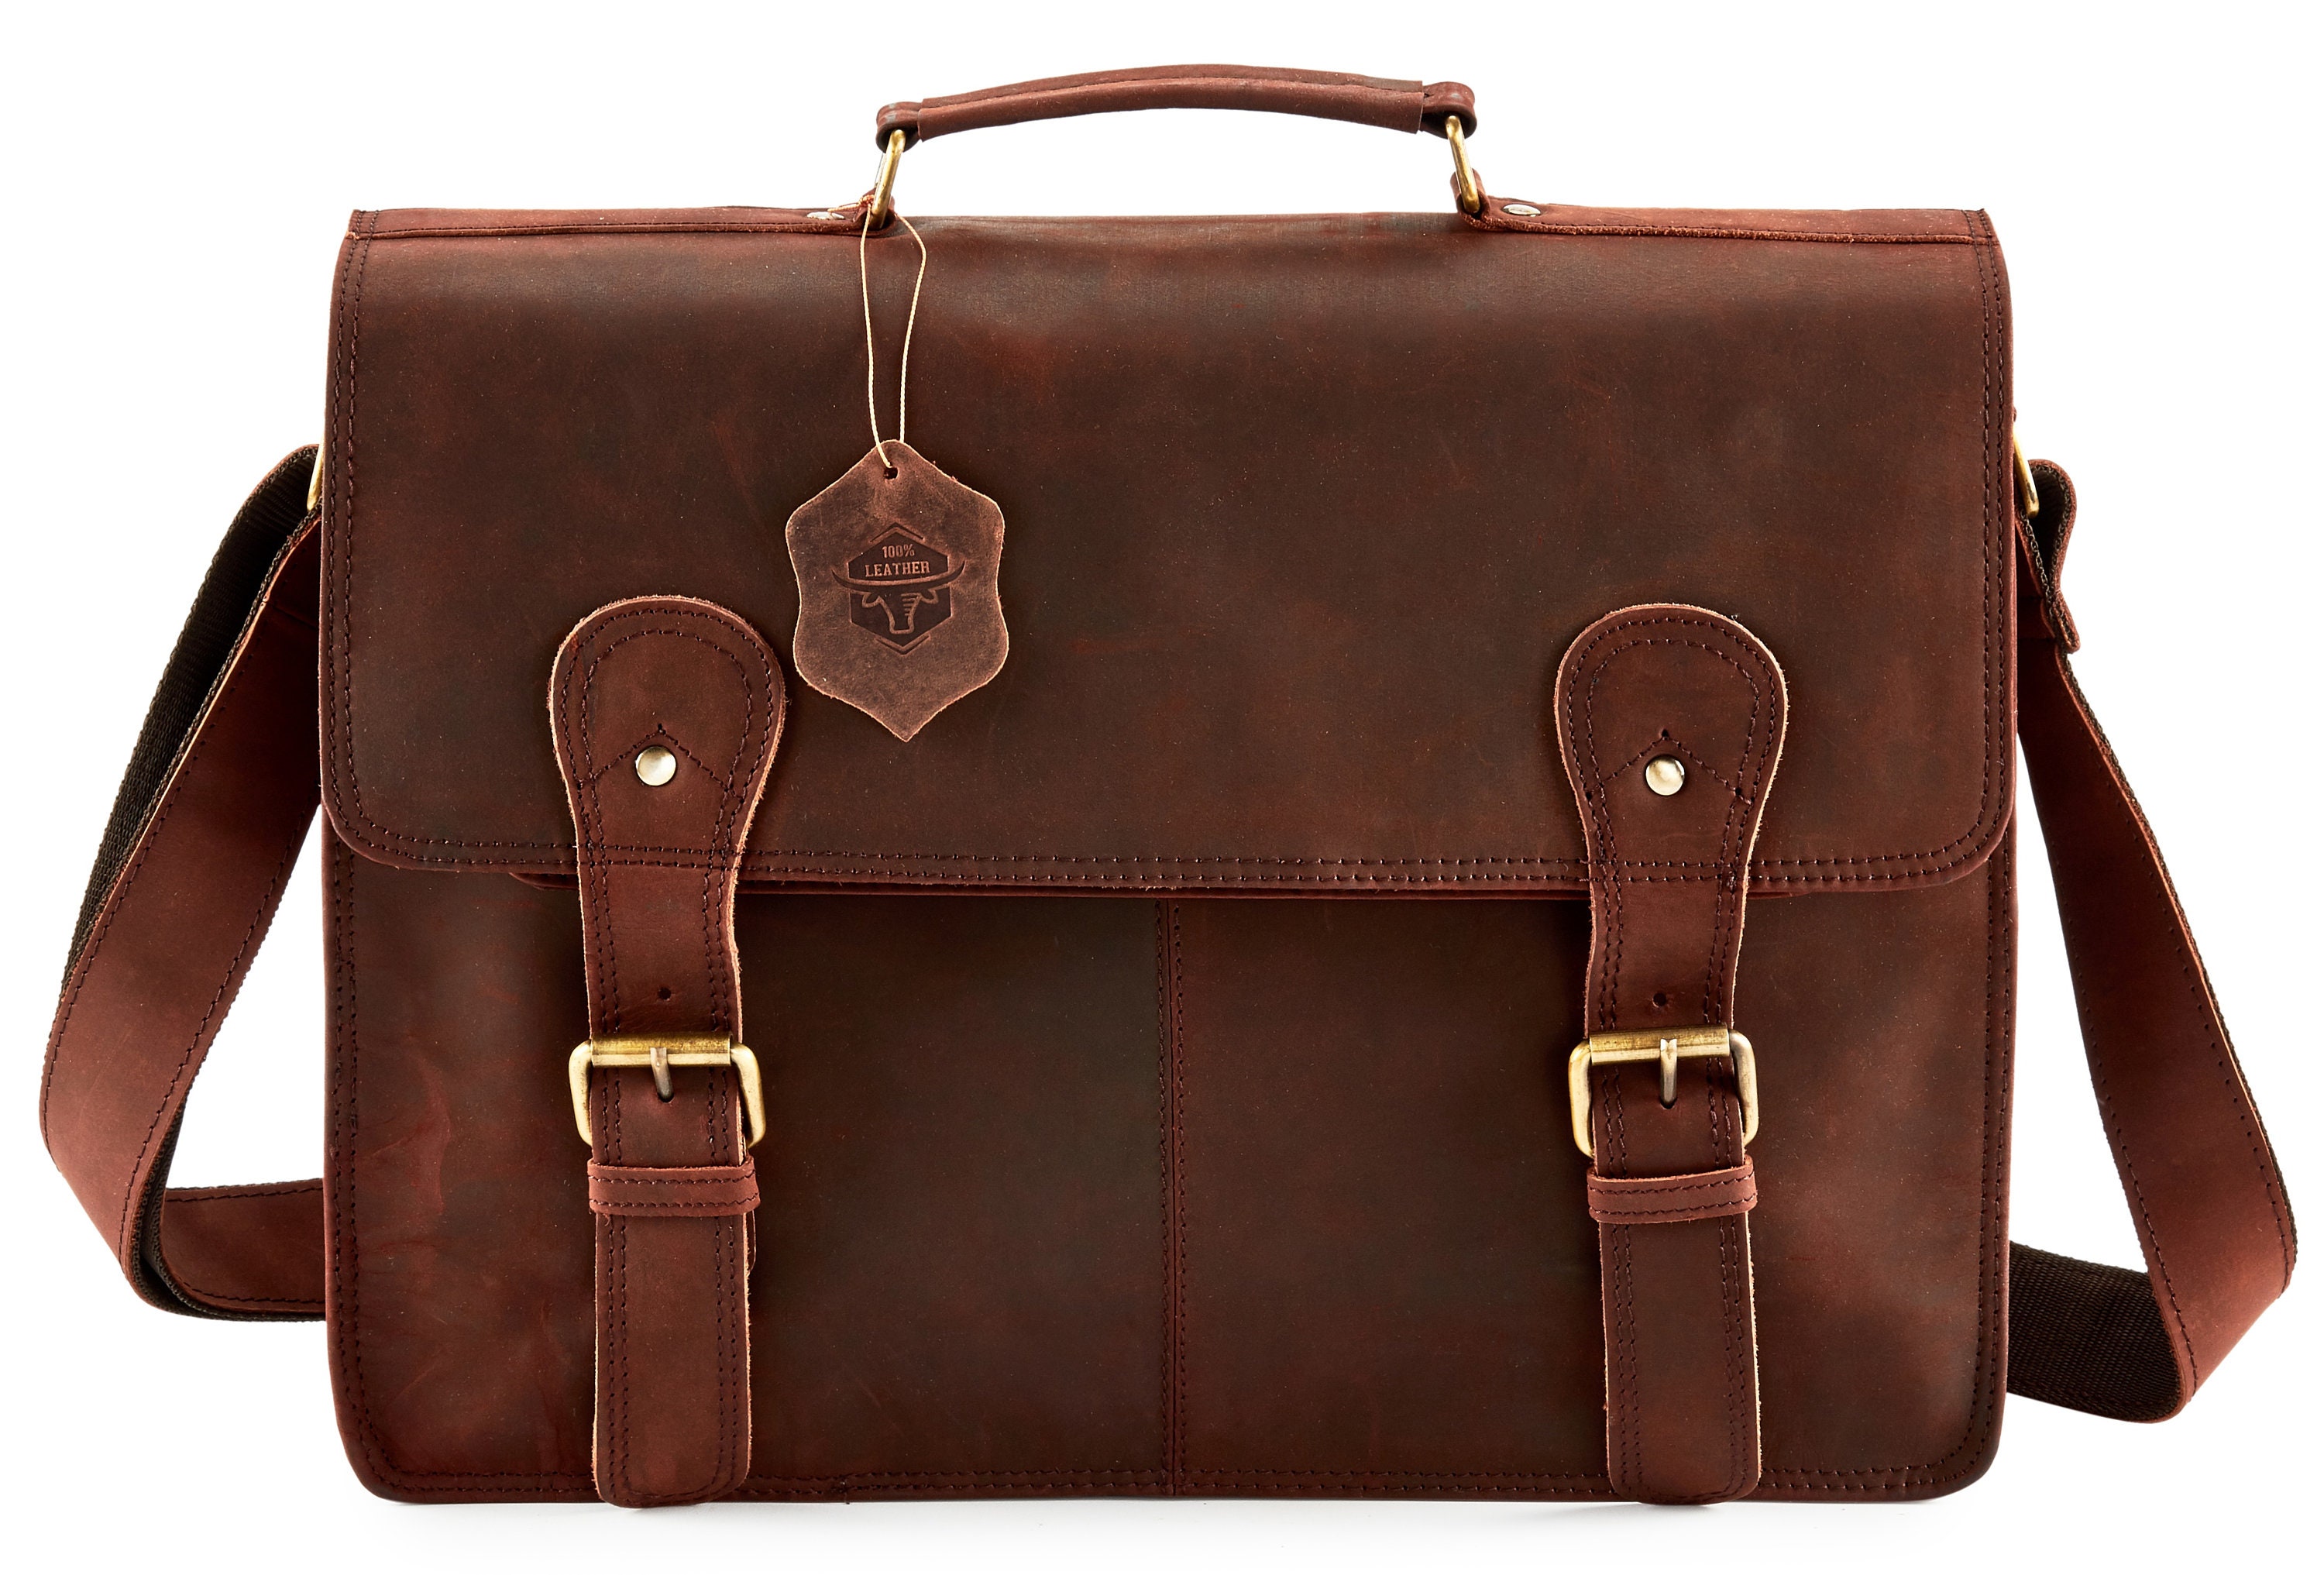 Men's Leather Bag man bag laptop bag manbag leather | Etsy